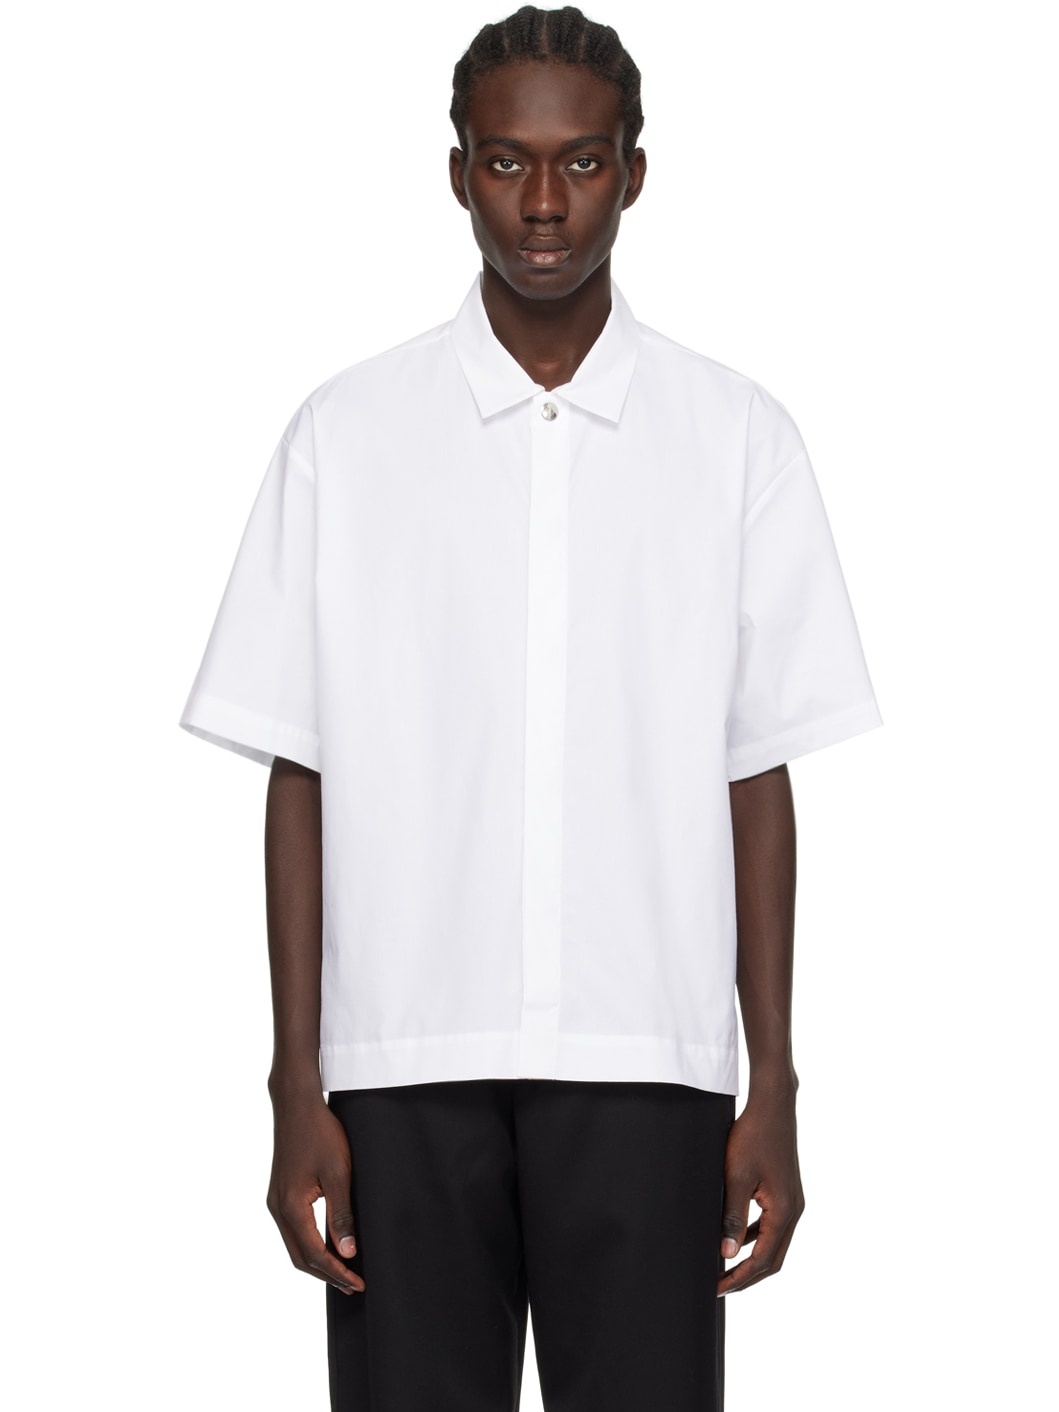 White Les Classiques 'La chemise manches courtes' Shirt - 1